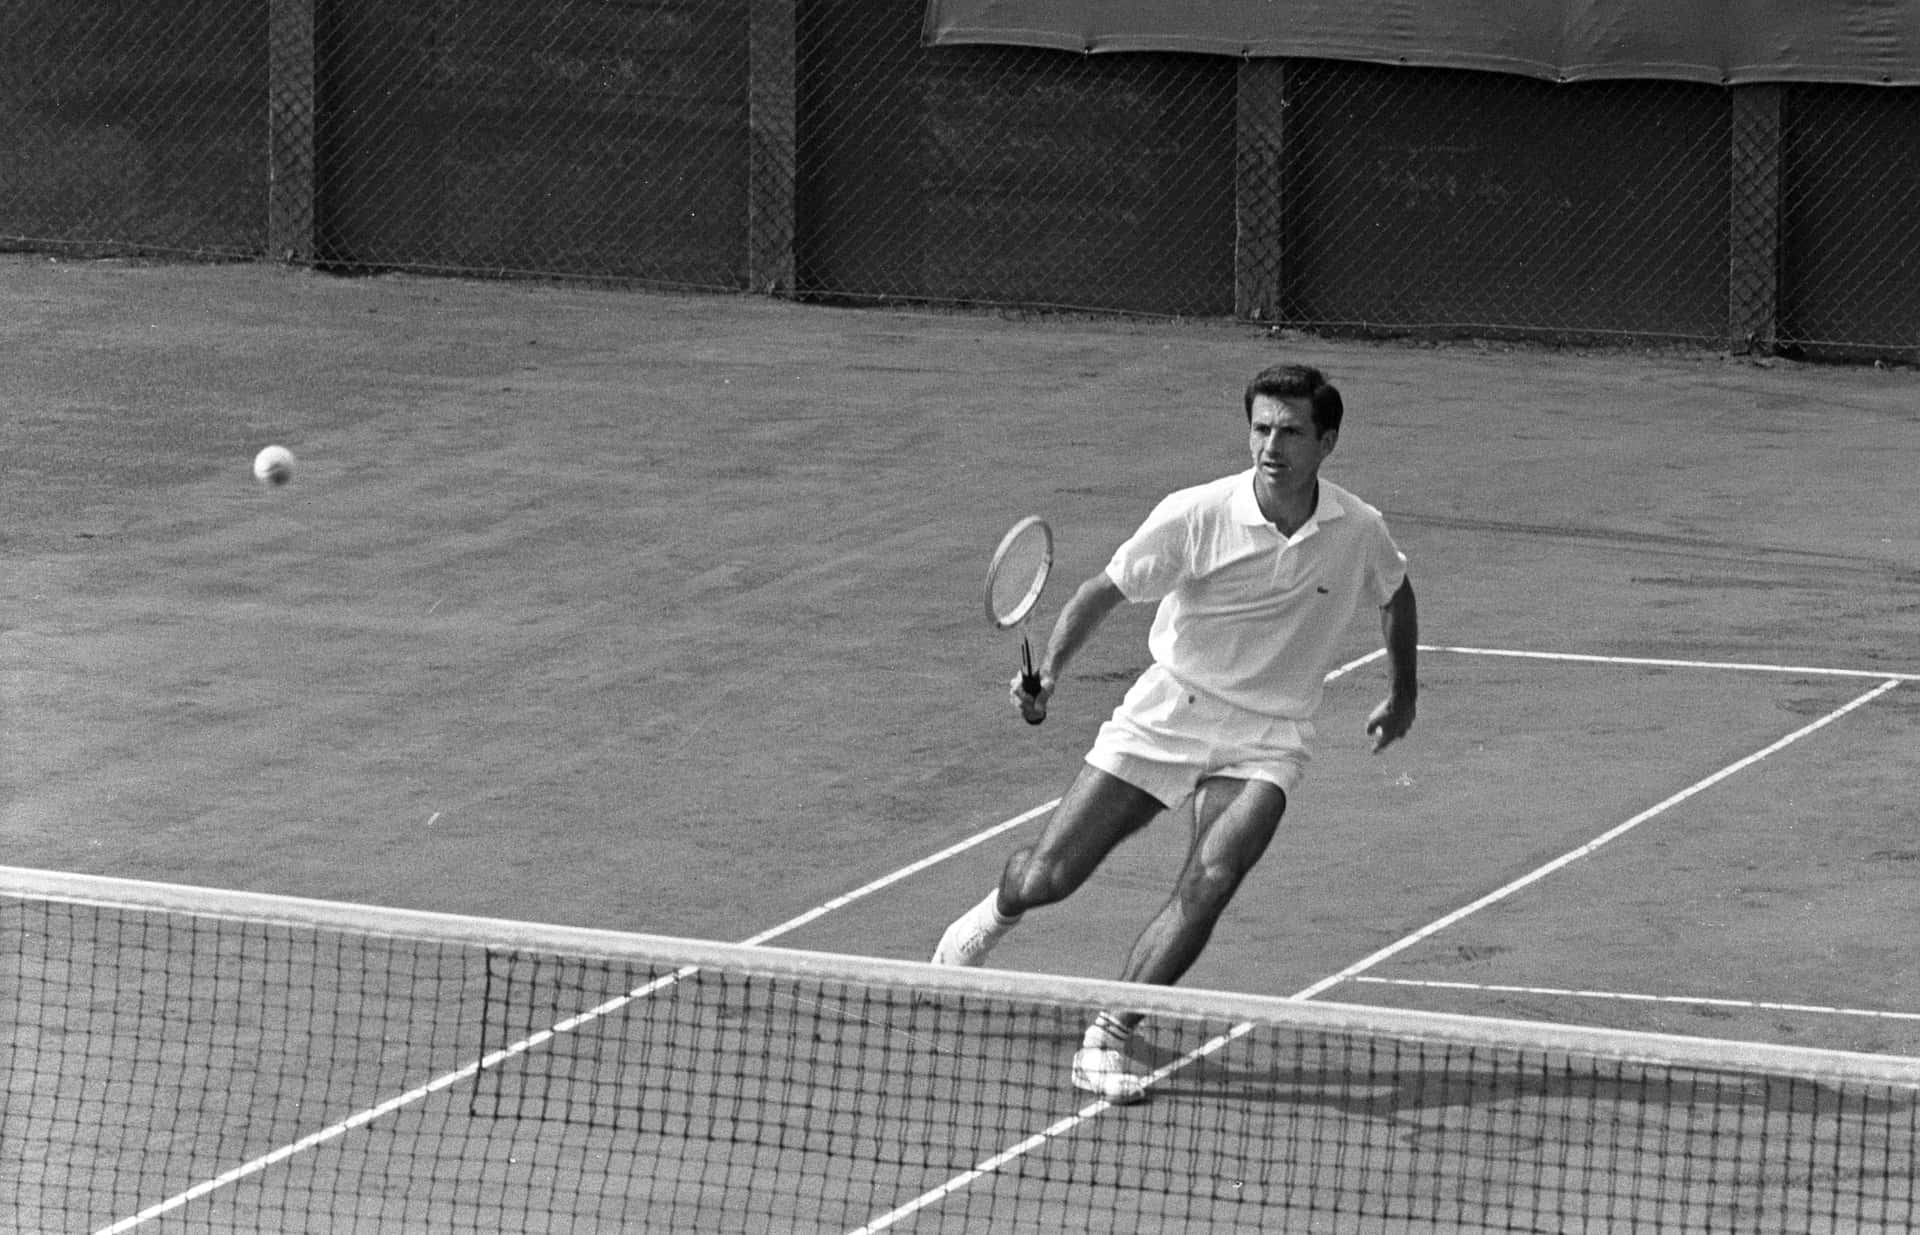 Ashleycooper Vid 1962 Nederländska Professionella Tennis-mästerskapen. Wallpaper